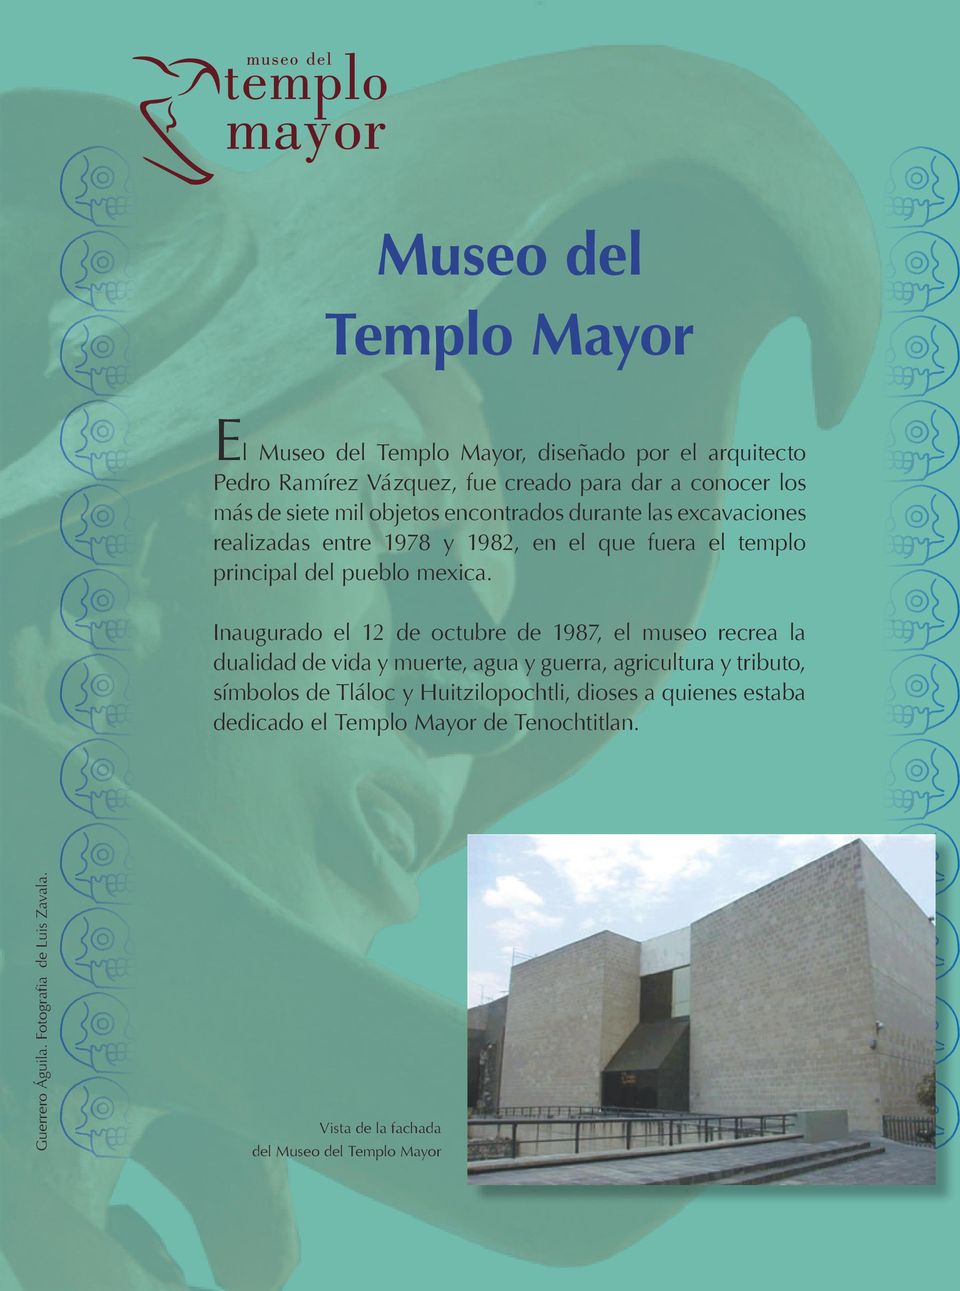 Inaugurado el 12 de octubre de 1987, el museo recrea la dualidad de vida y muerte, agua y guerra, agricultura y tributo, símbolos de Tláloc y